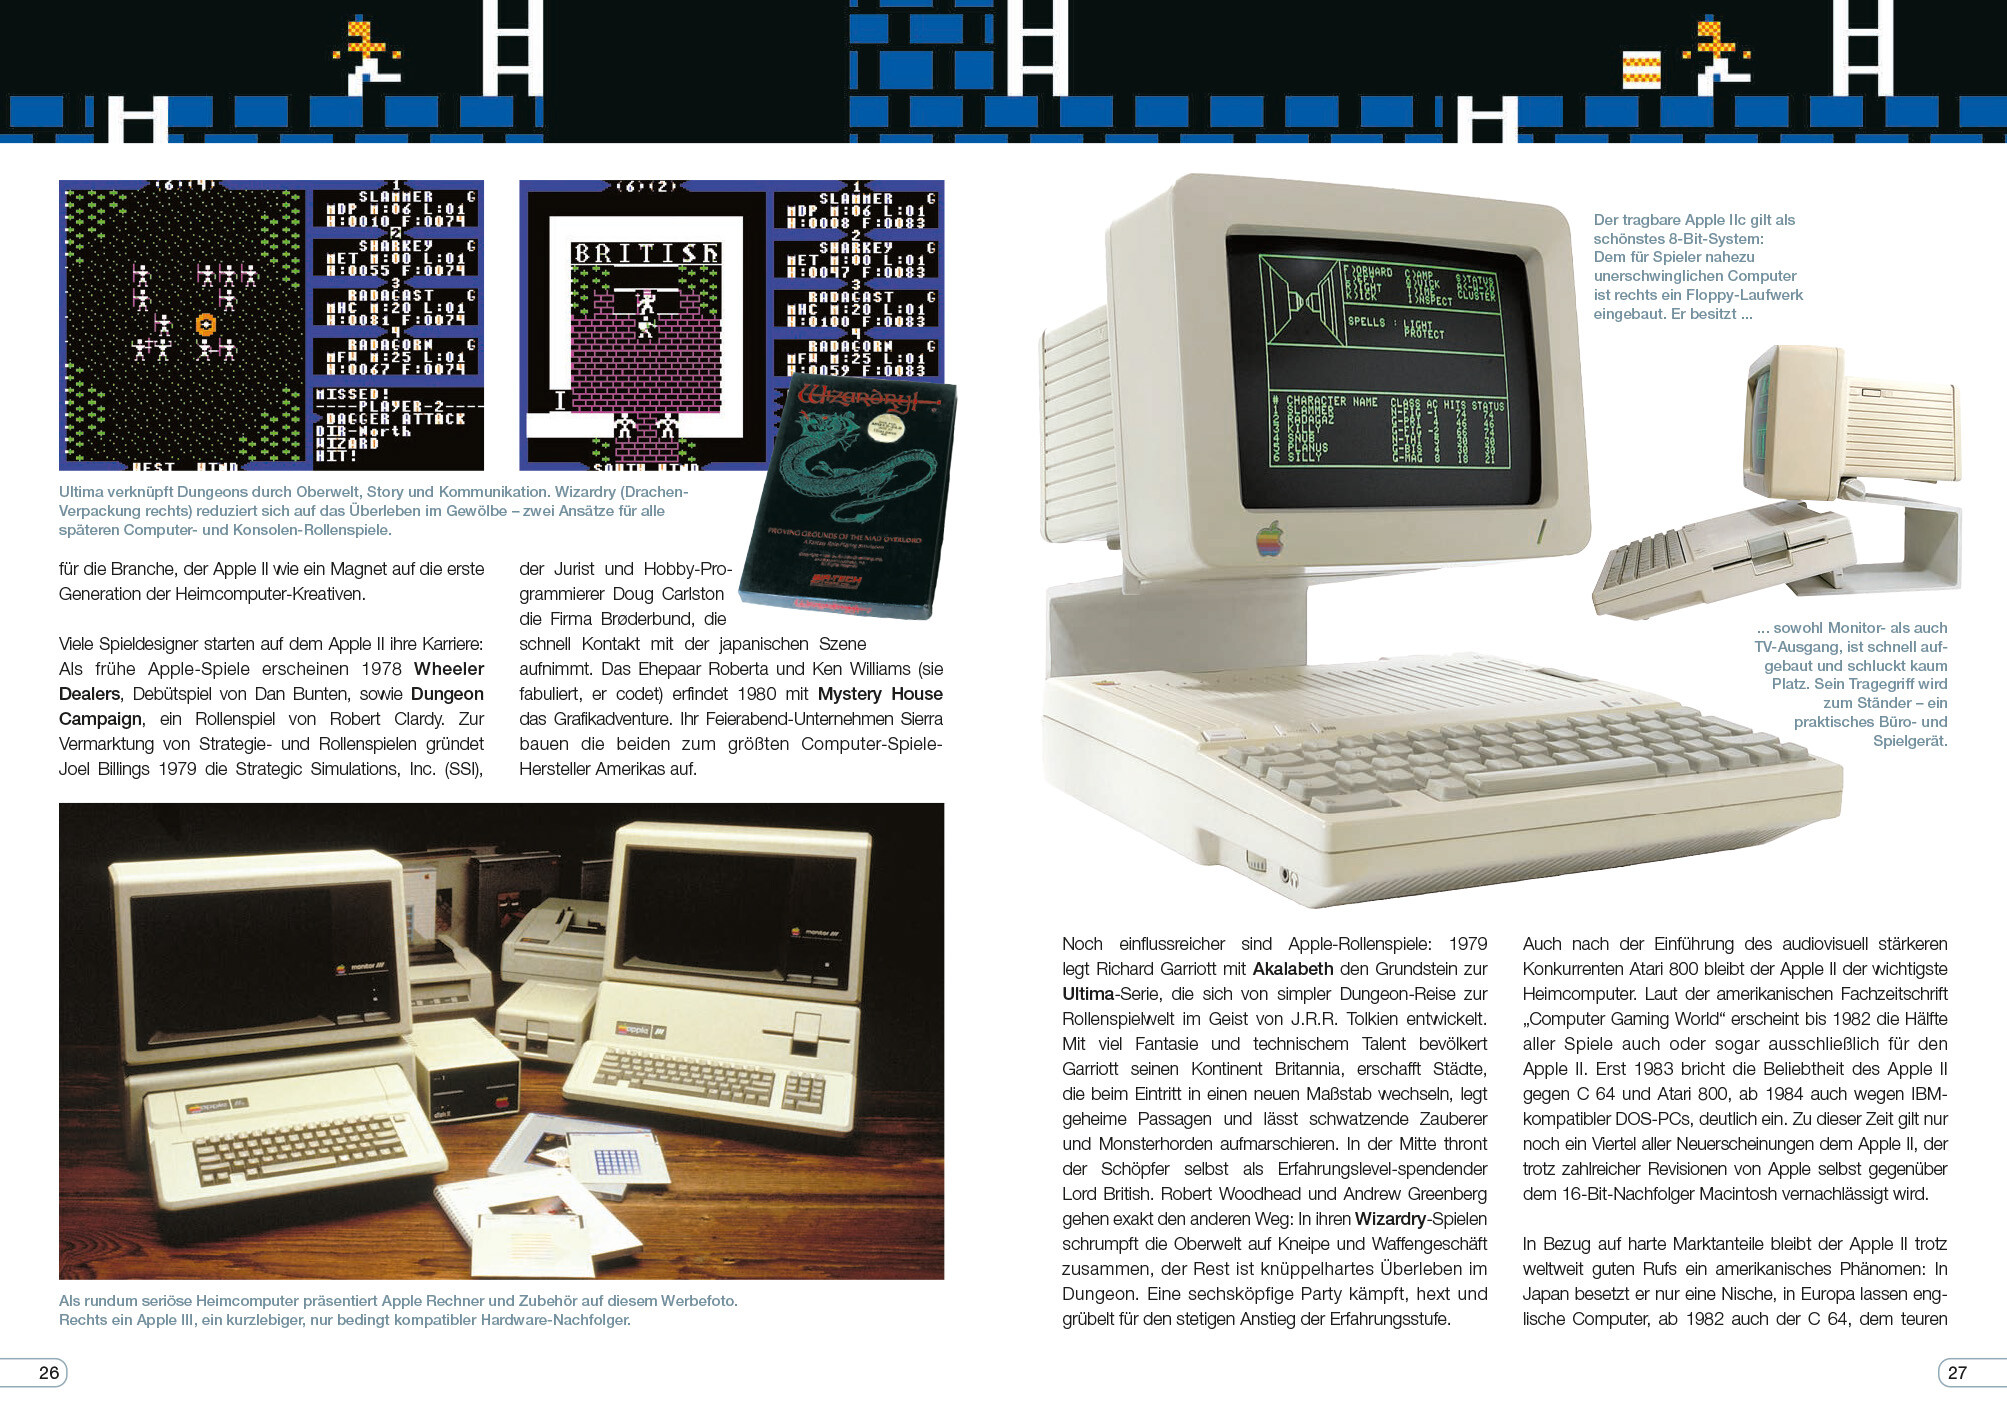 Spielkonsolen und Heimcomputer 1972 bis 2022 (5. Auflage)